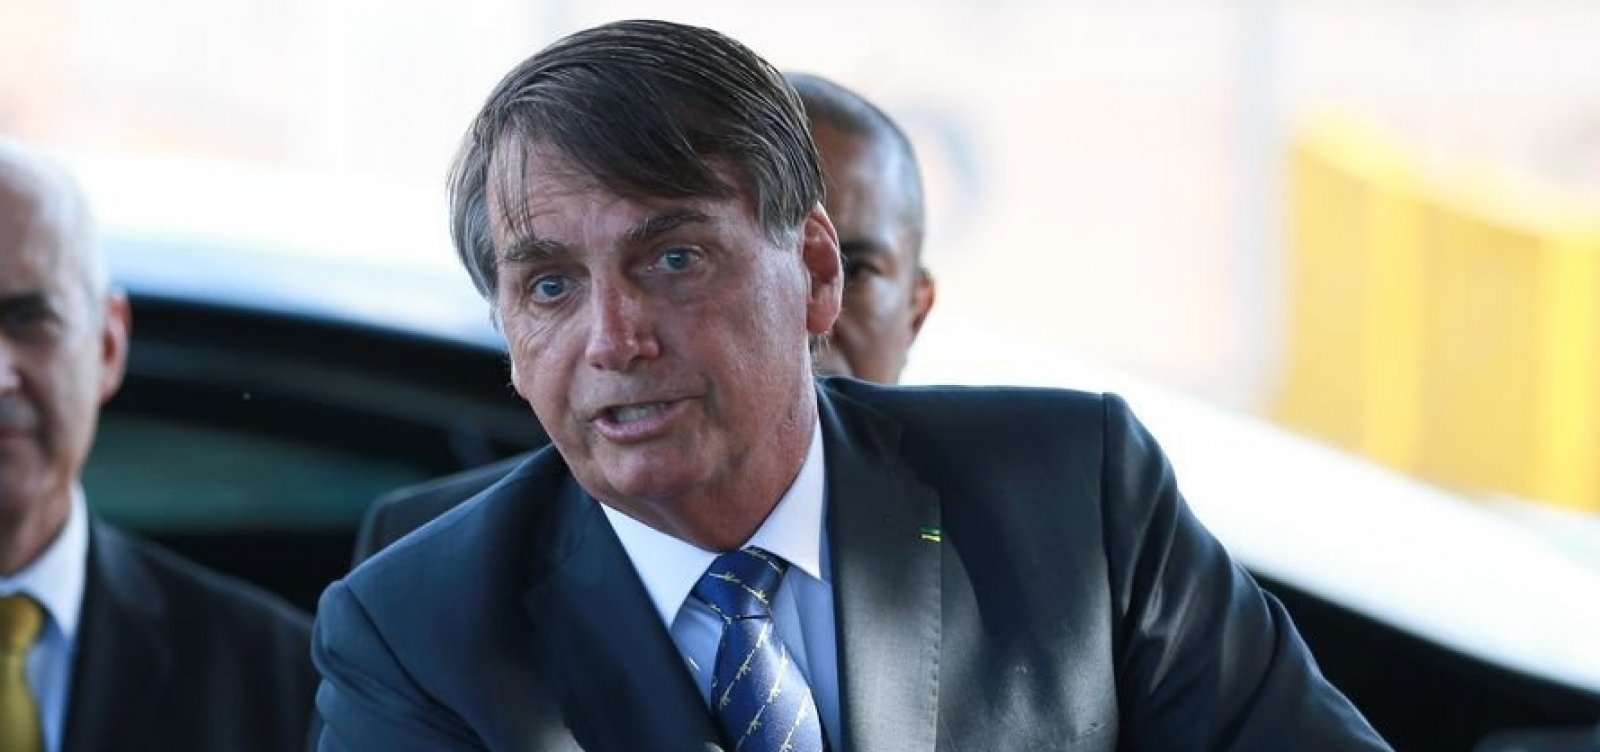 Bolsonaro critica signatários de manifesto a favor da democracia: "Empresários mamíferos"